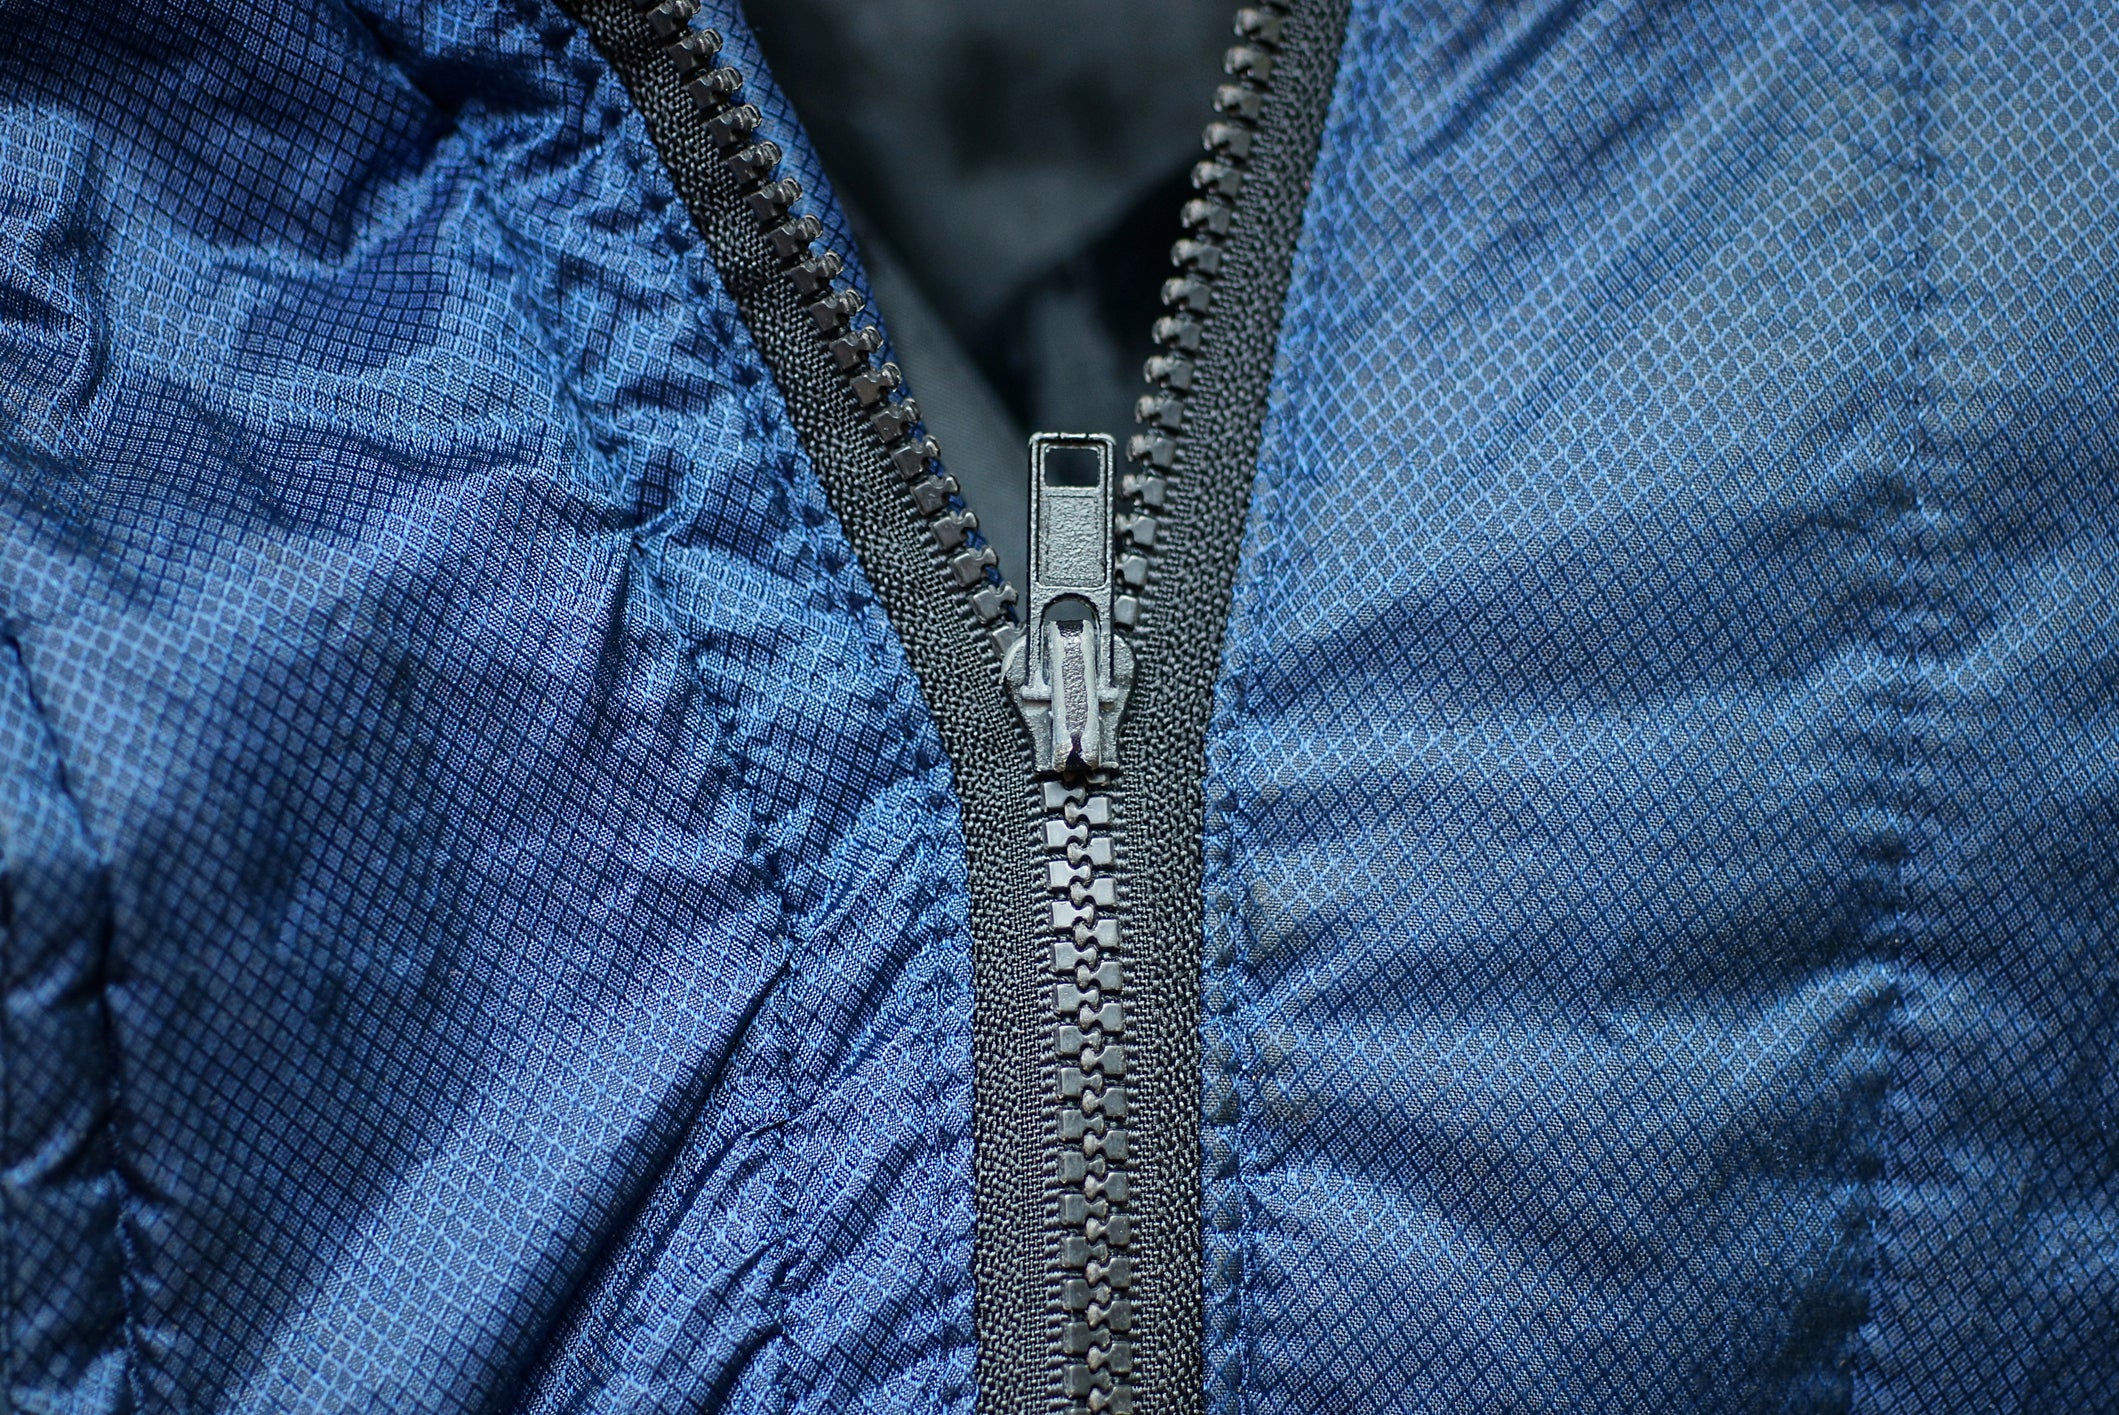 Coat Zippers